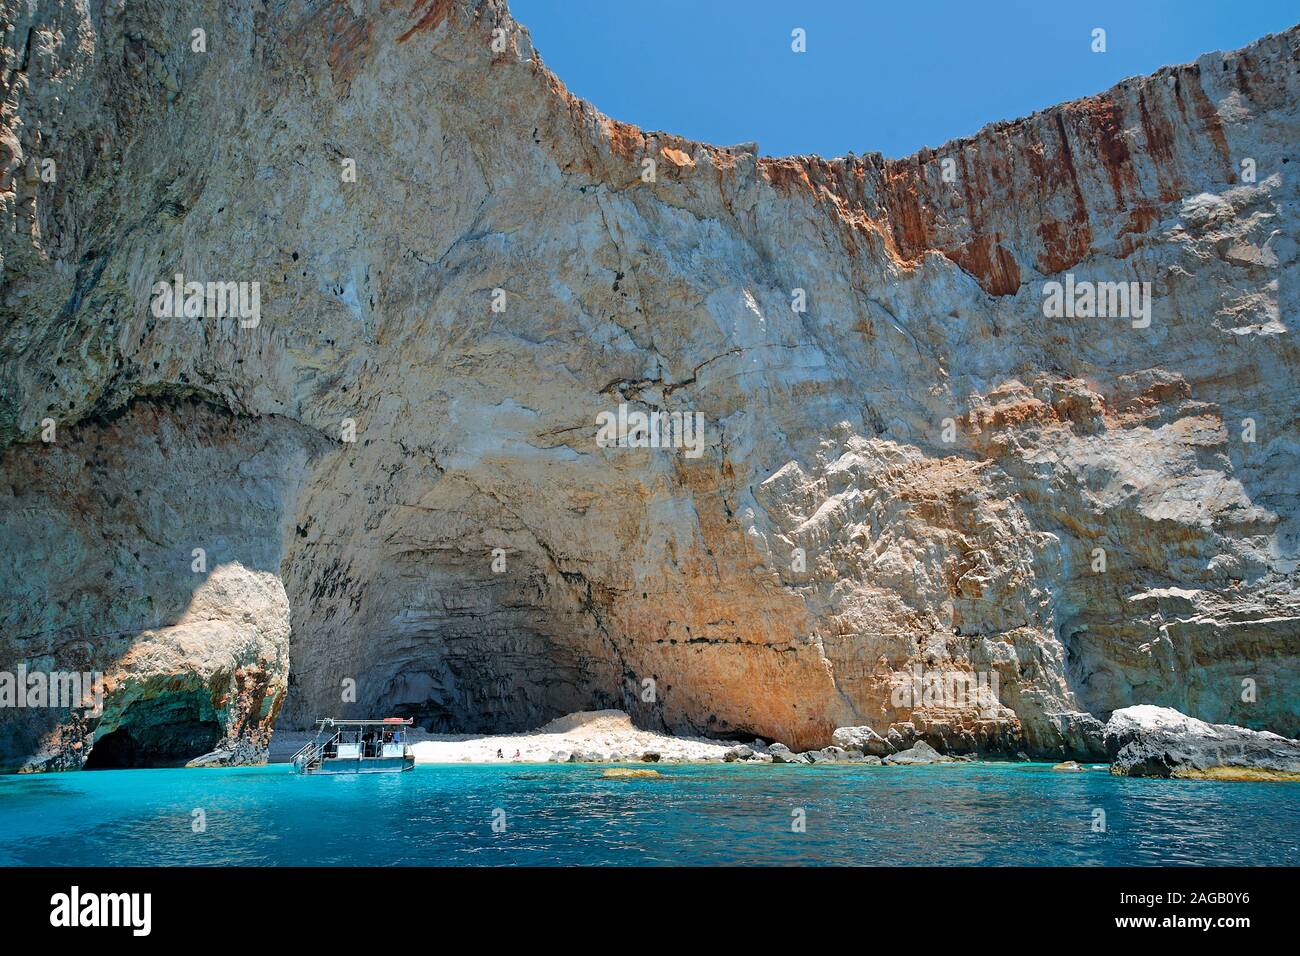 Barca a un hidden piccola spiaggia presso la costa rocciosa, Zante Island, Grecia Foto Stock